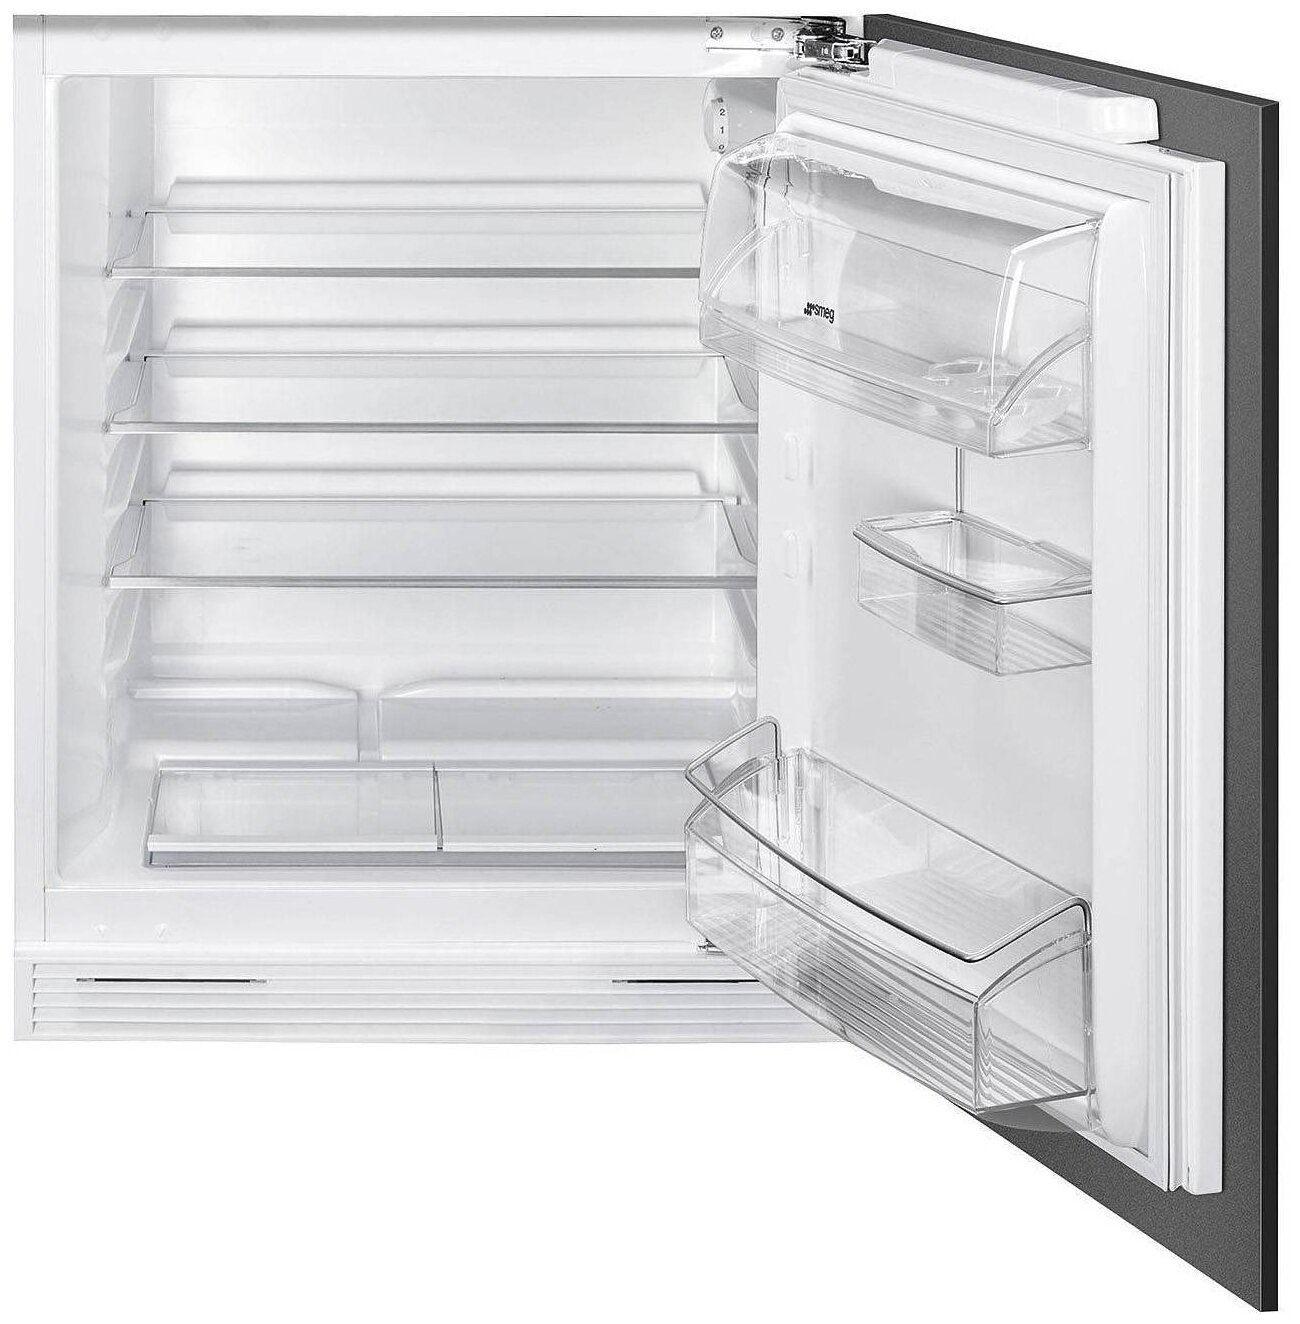 Встраиваемый холодильник Smeg s7323lfep. Встраиваемый холодильник Smeg u8l080df. Встраиваемый холодильник Smeg ud7122csp. Smeg c81721f. Морозилка встраиваемая купить